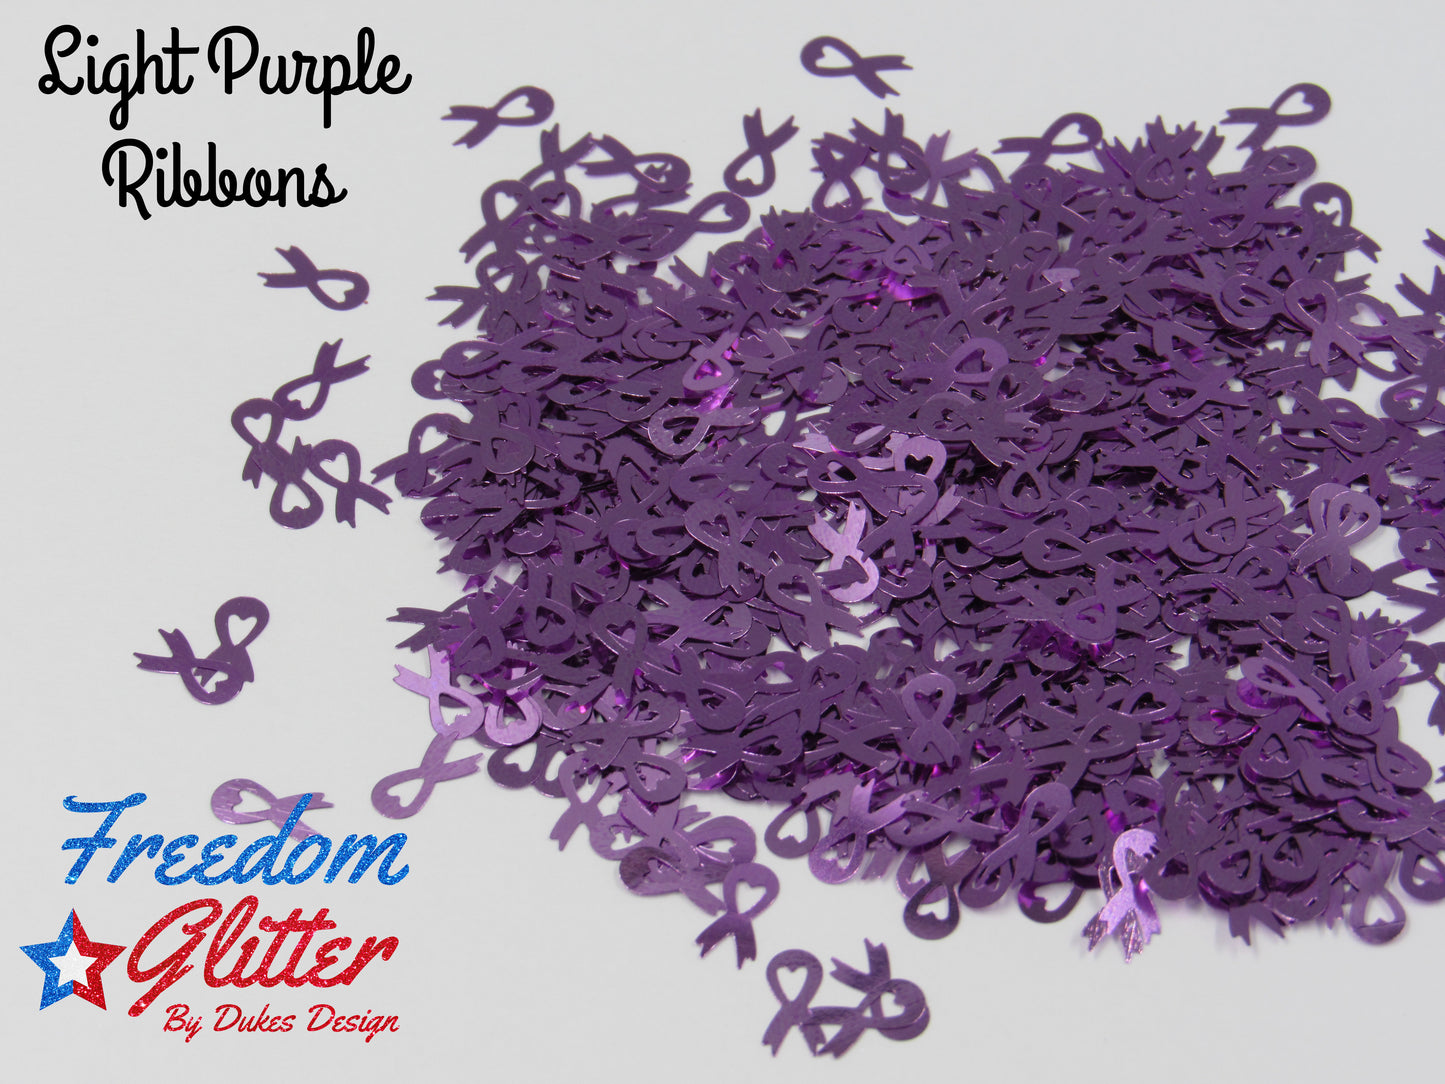 Light Purple Ribbons (Shape Mix)